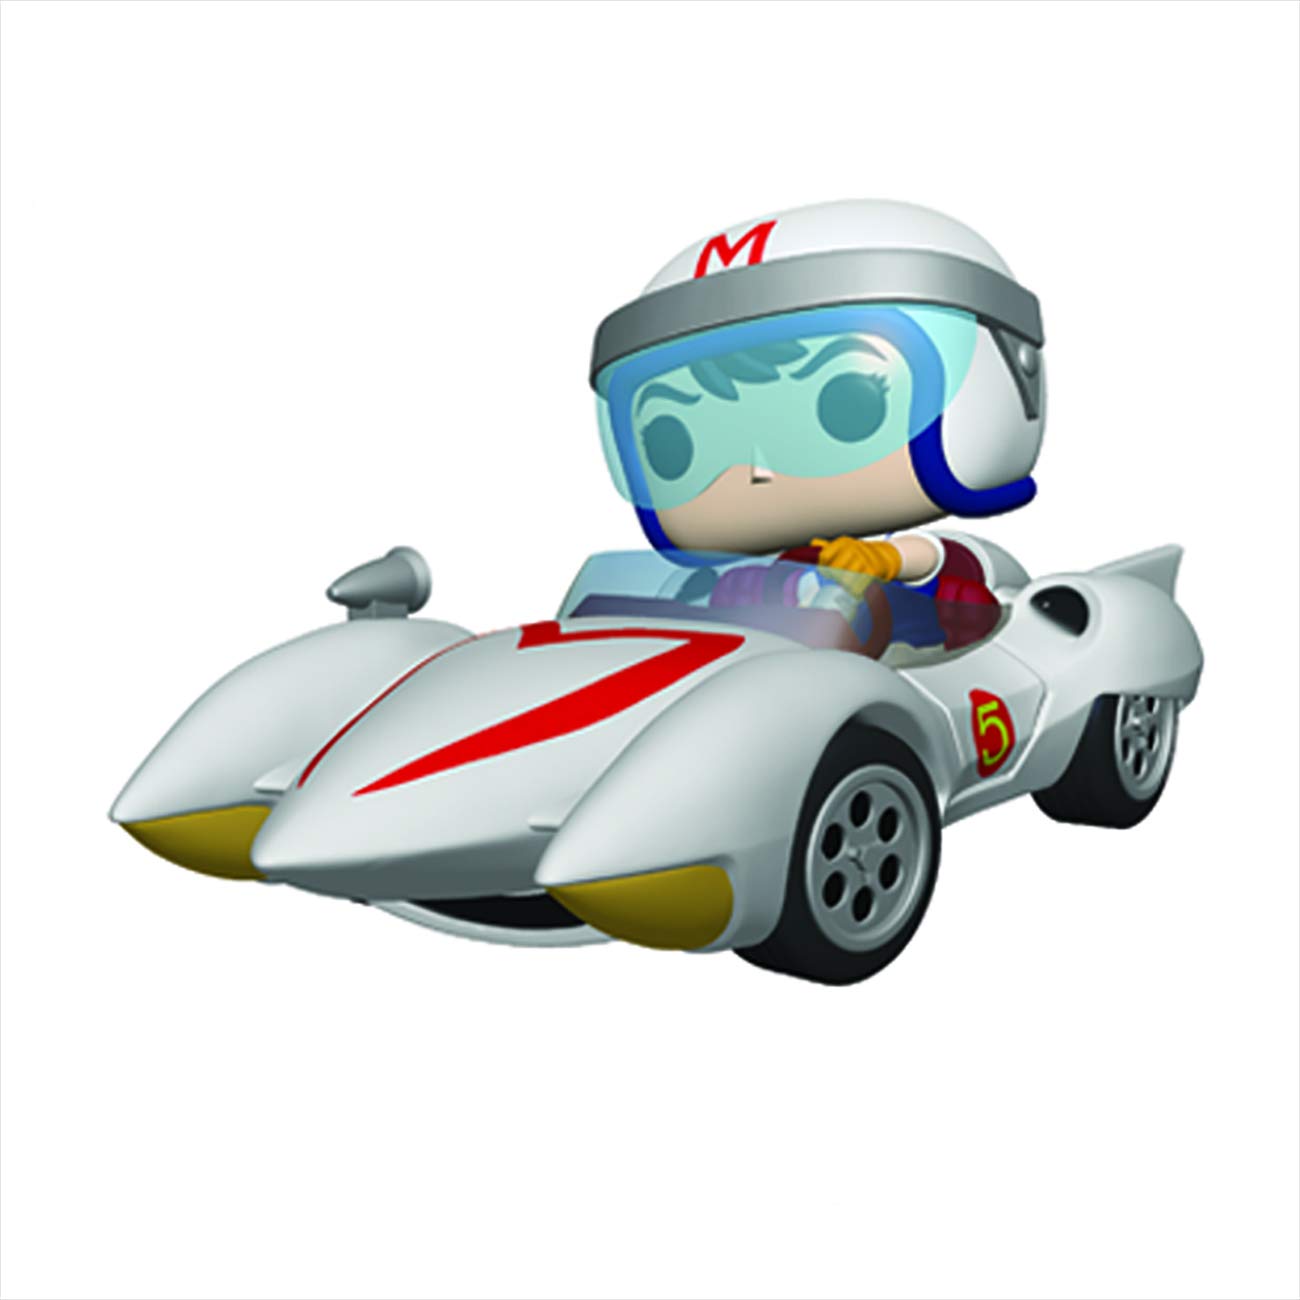 Funko POP! Rides: Speed Racer - Speed with Mach 5